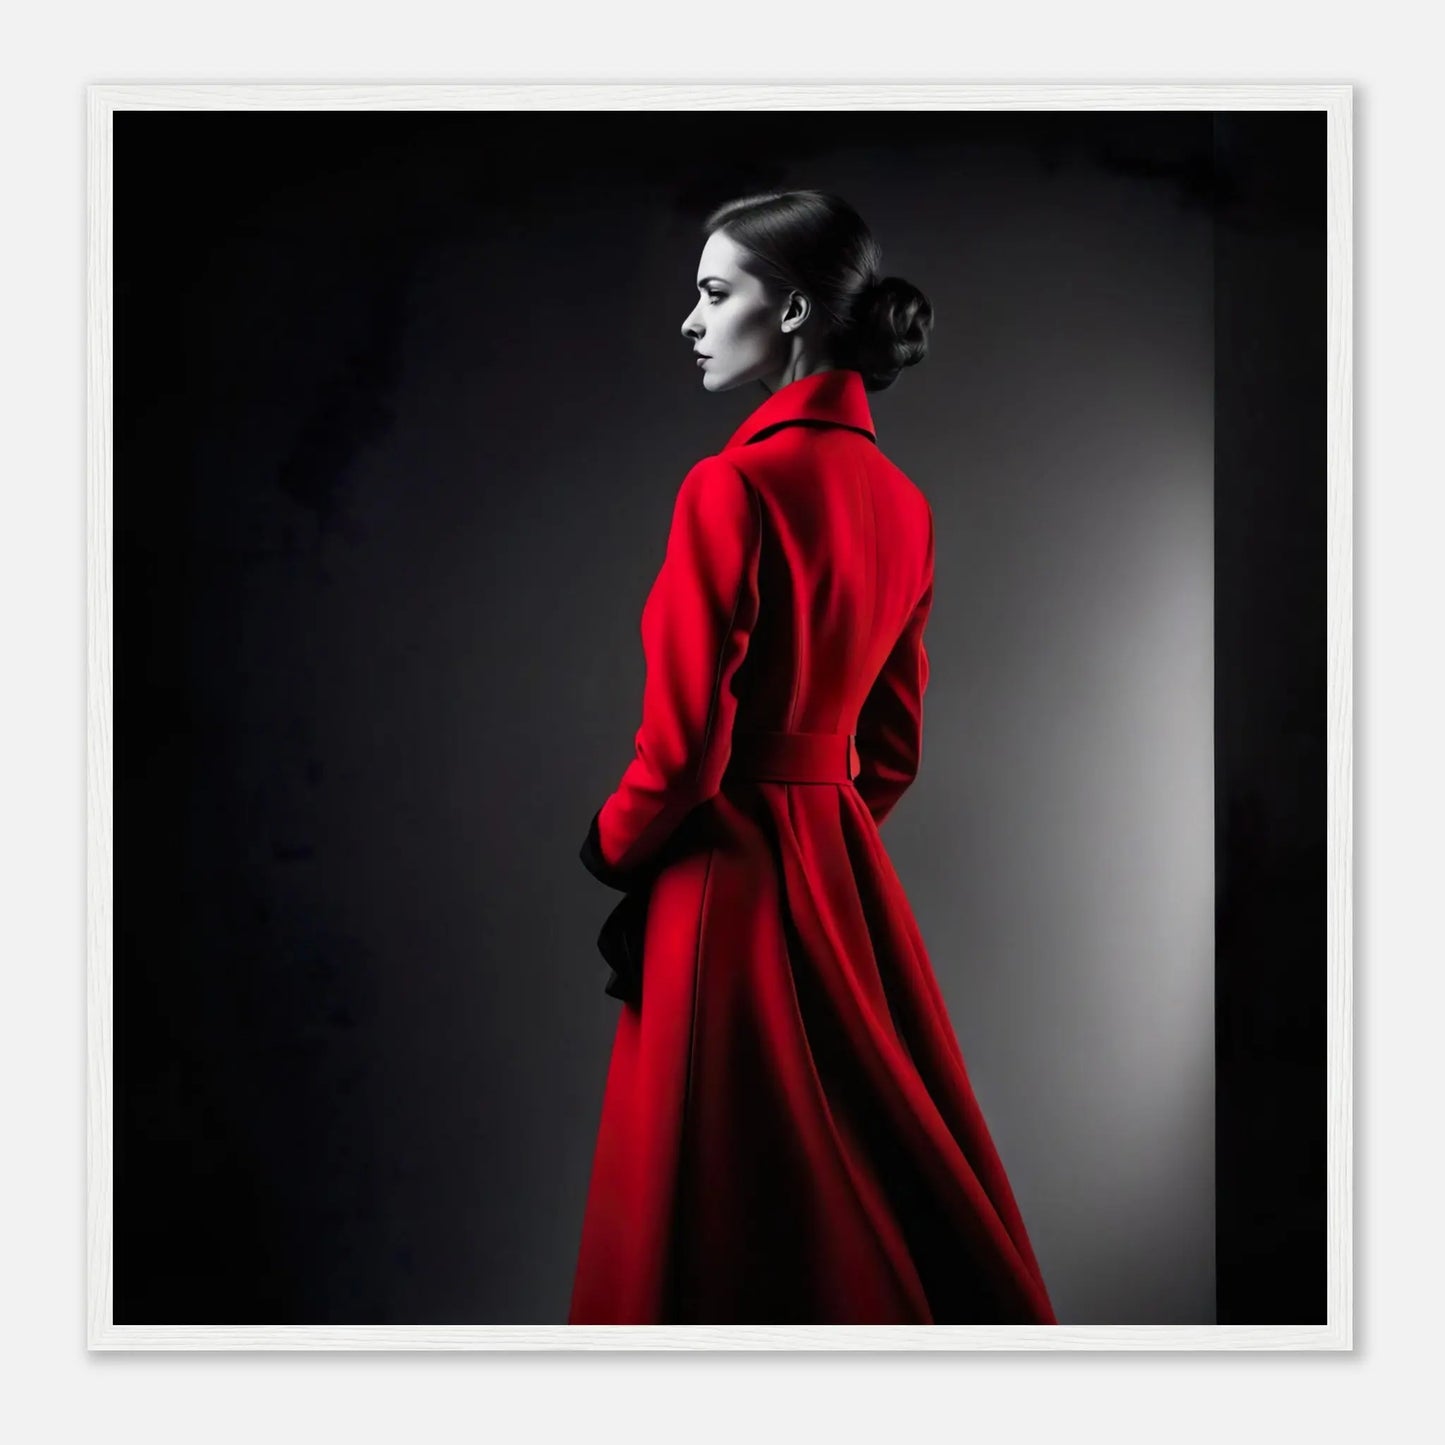 Gerahmtes Premium-Poster - Frau im roten Mantel - Schwarz-Weiß, KI-Kunst - RolConArt, Schwarz-Weiß mit Akzentfarben, 70x70-cm-28x28-Weißer-Rahmen